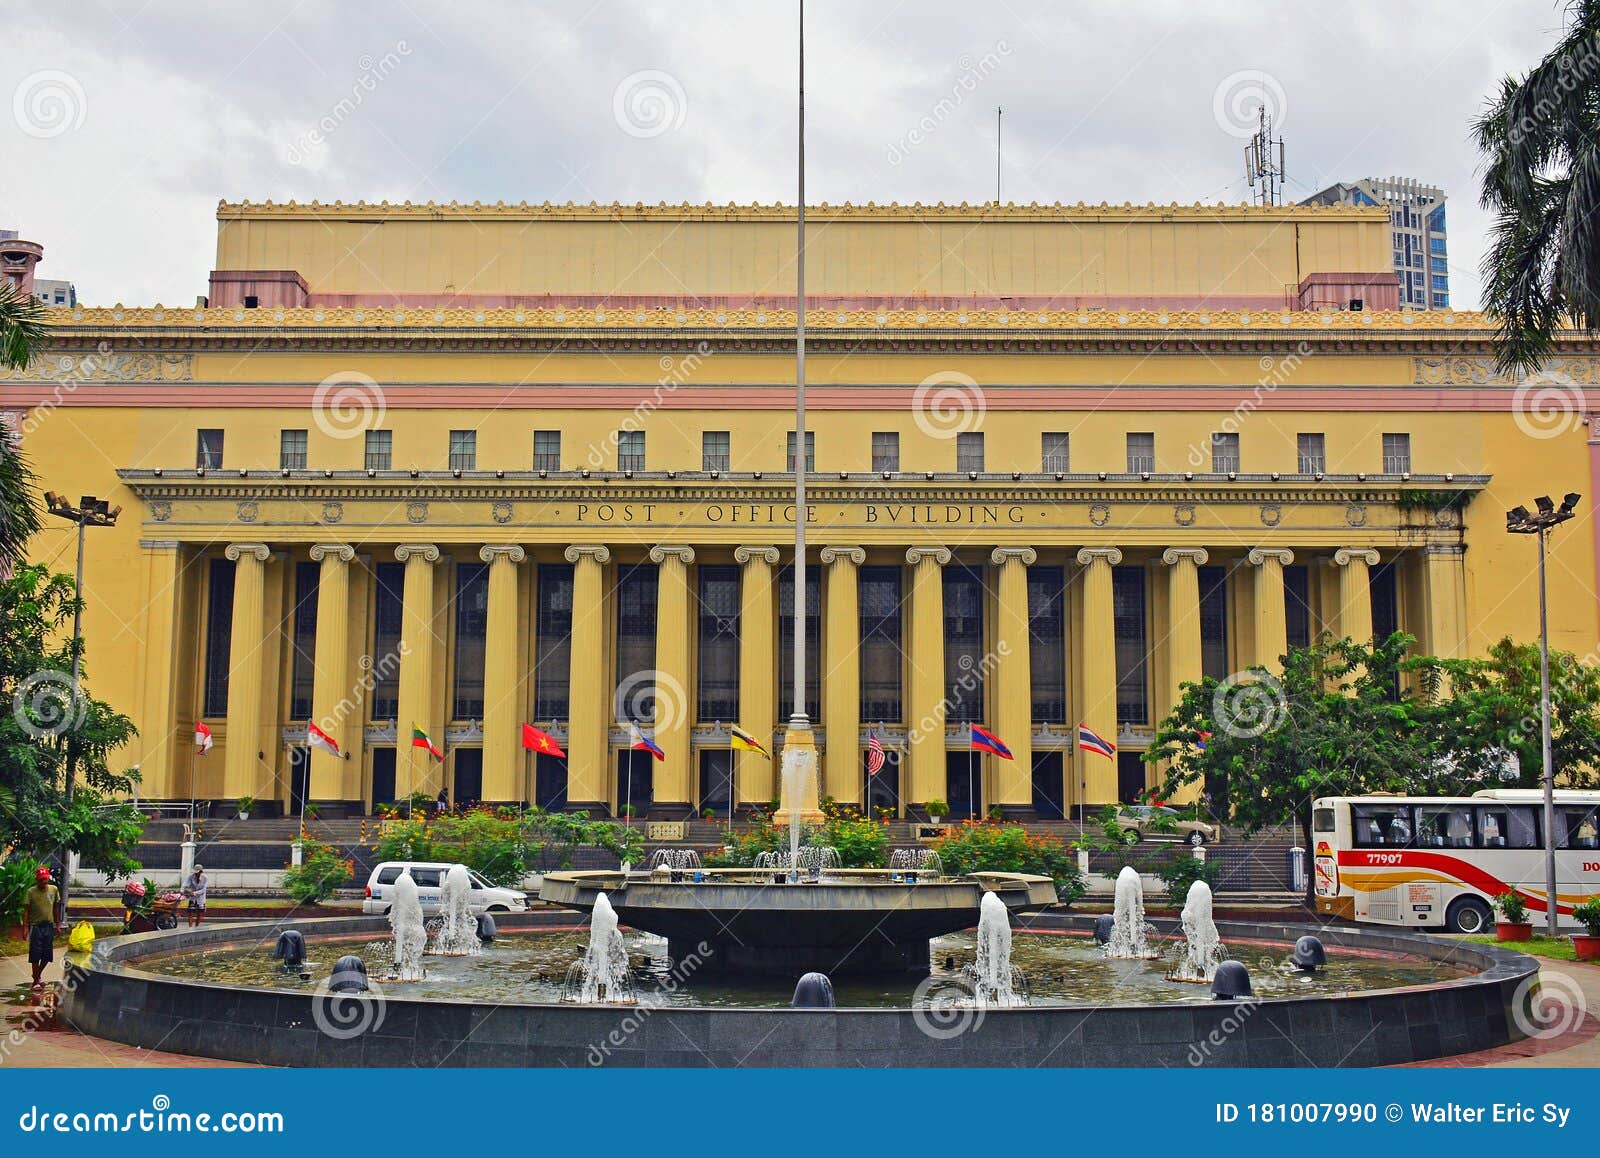 facade-manila-central-post-office-stock-photos-free-royalty-free